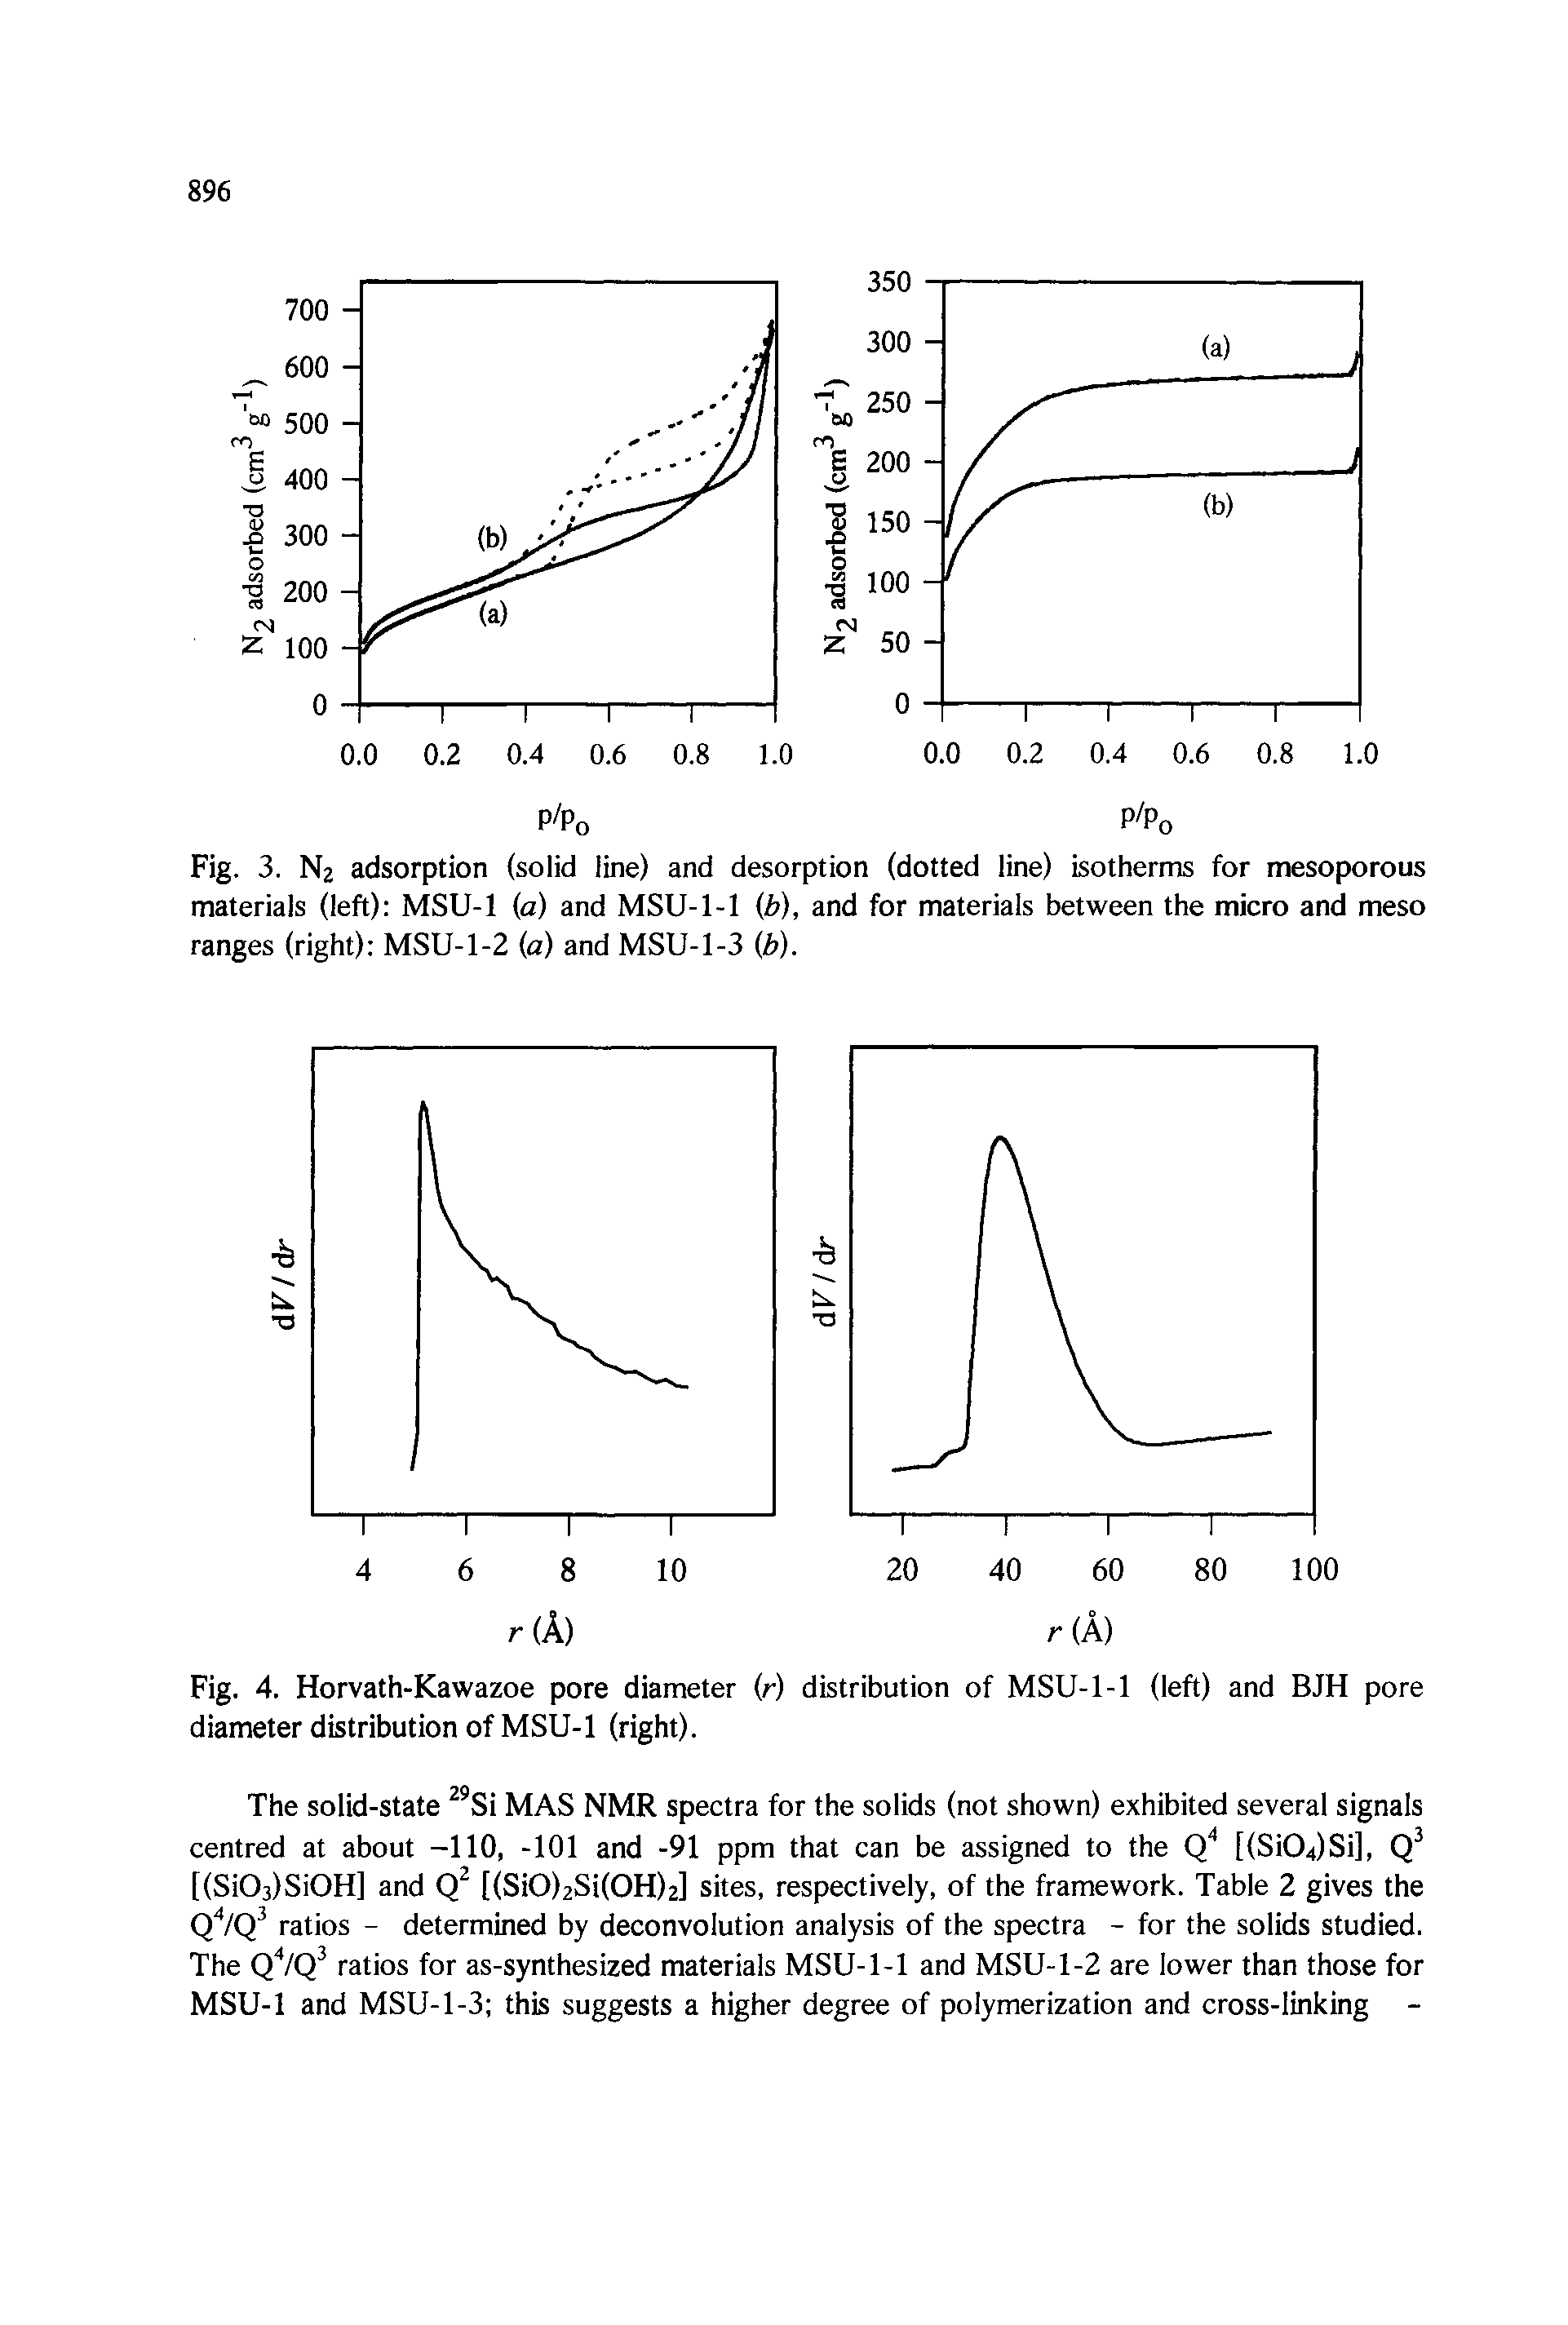 Fig. 4. Horvath-Kawazoe pore diameter (r) distribution of MSU-1-1 (left) and BJH pore diameter distribution of MSU-1 (right).